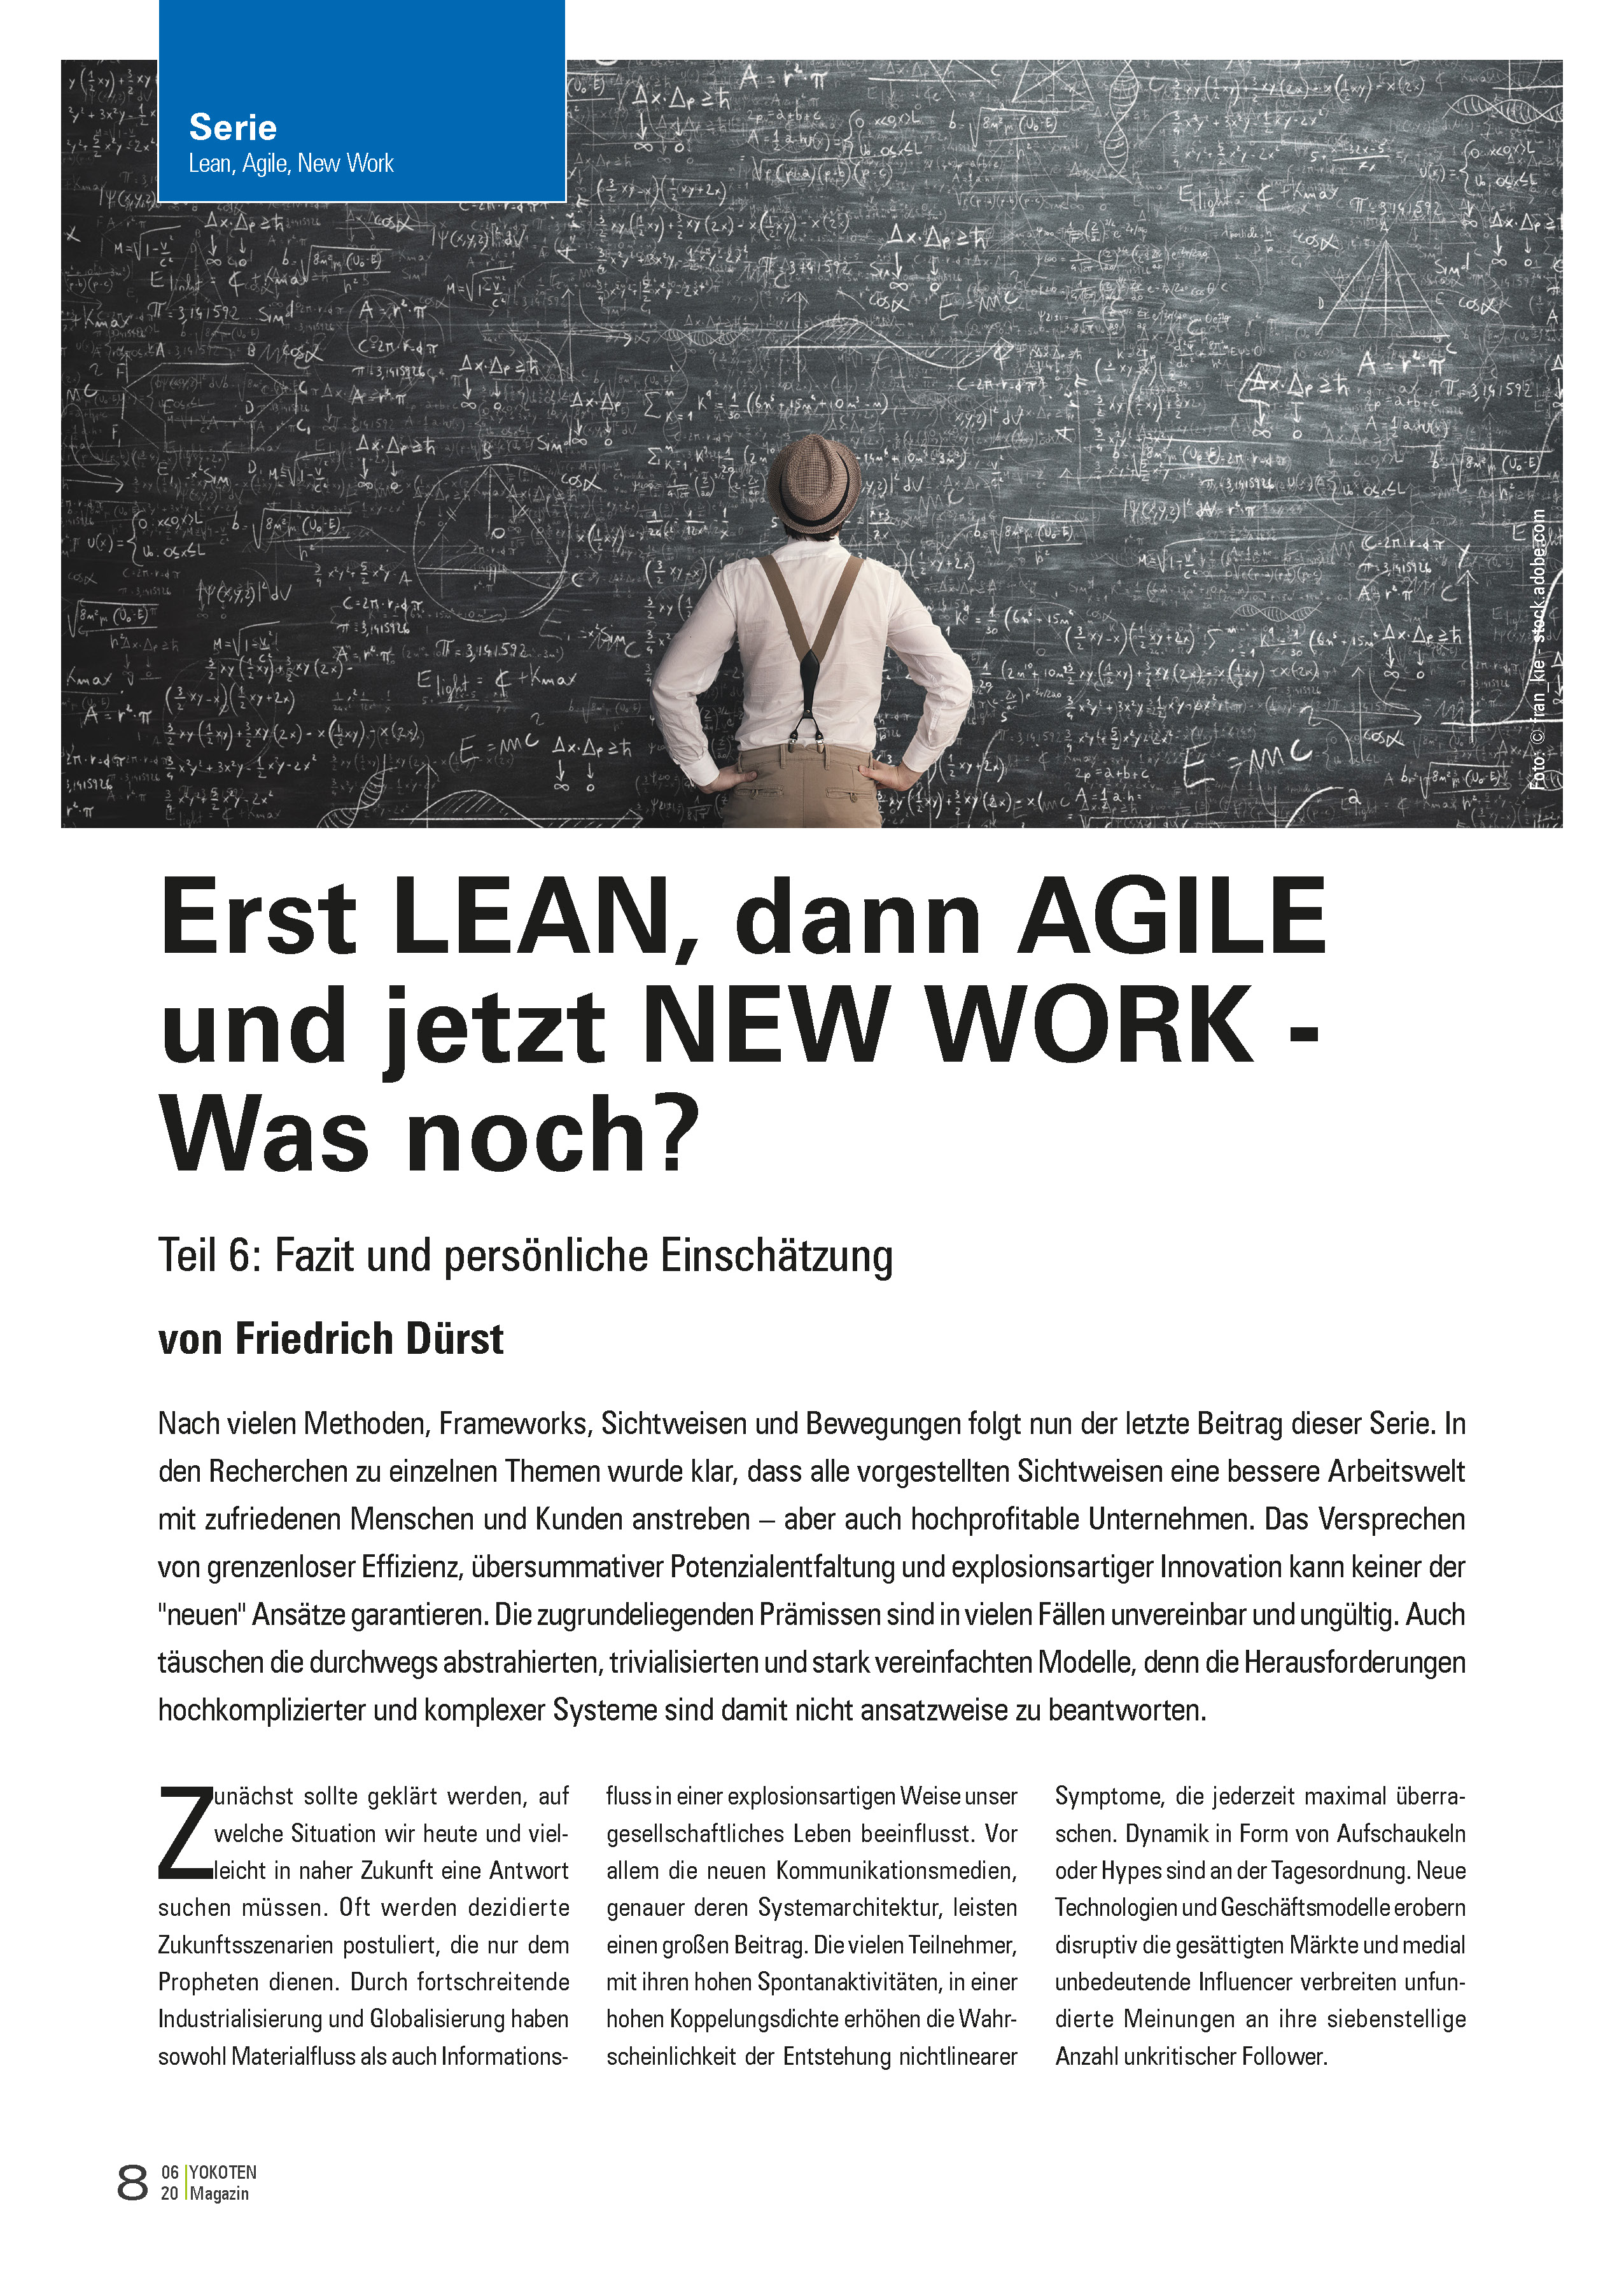 Erst LEAN, dann AGILE und jetzt NEW WORK - Was noch? - Artikel aus Fachmagazin YOKOTEN 2020-06